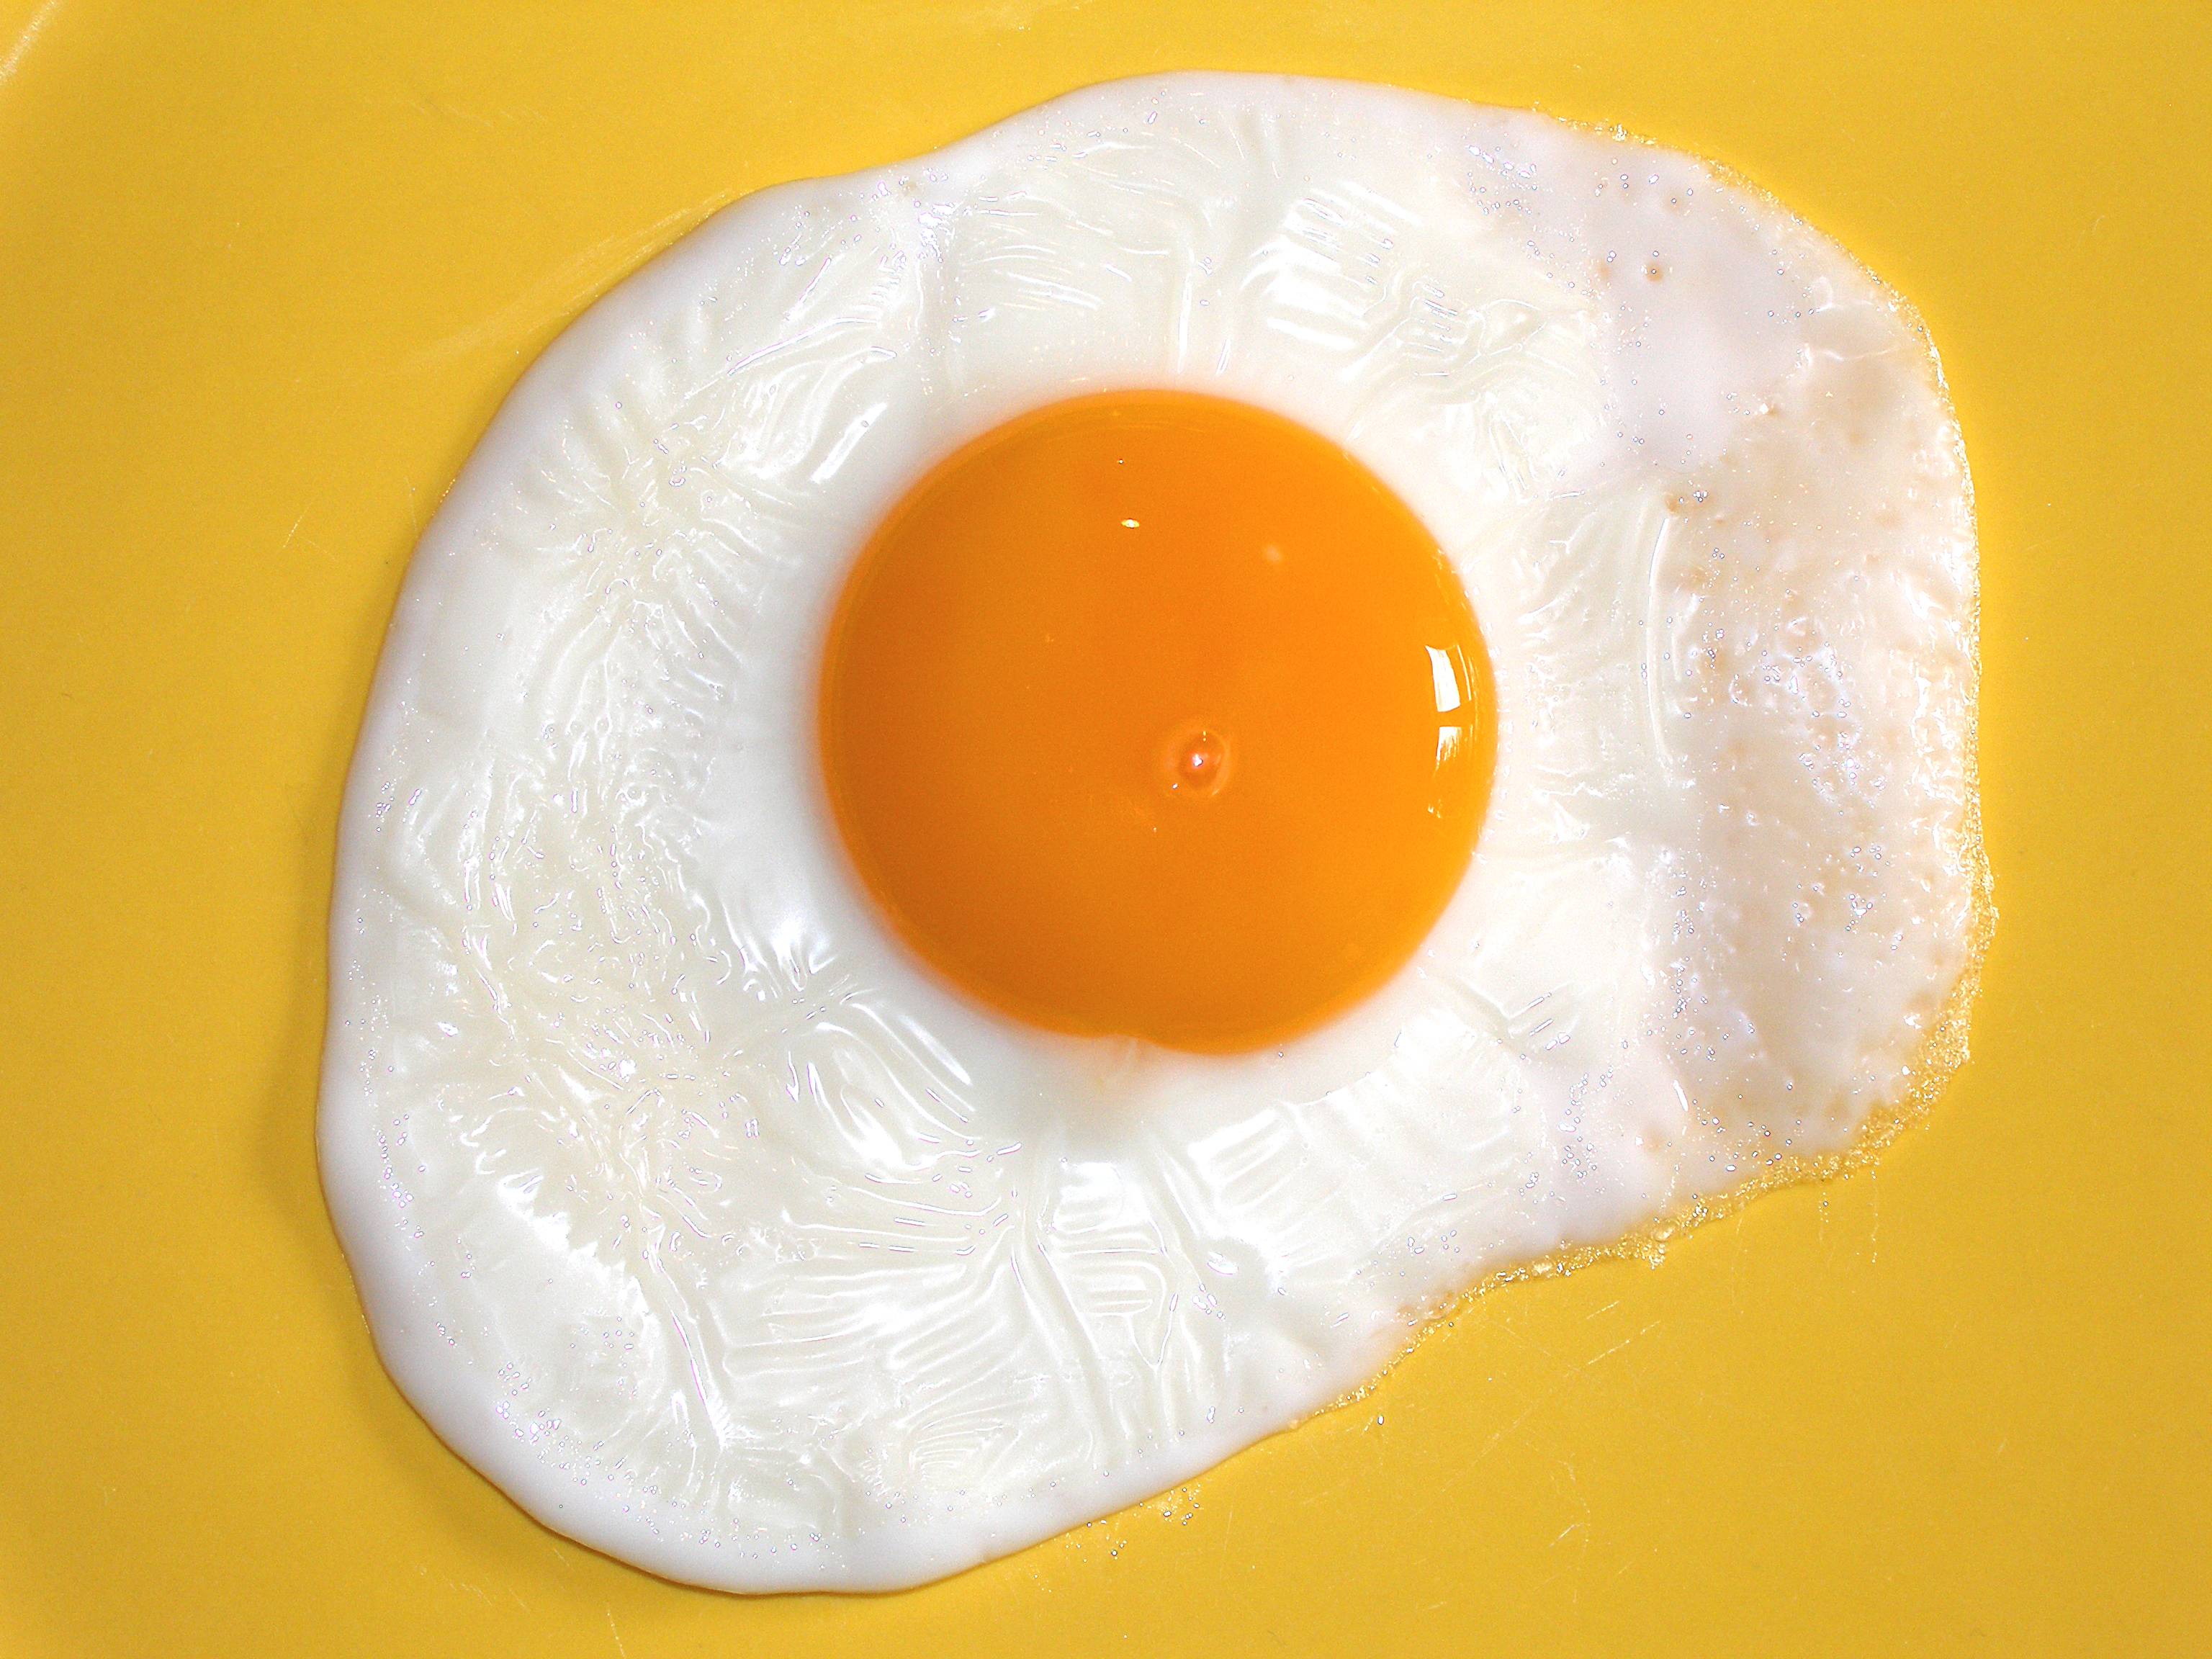  ¿Es peligroso comer huevo todos los días?